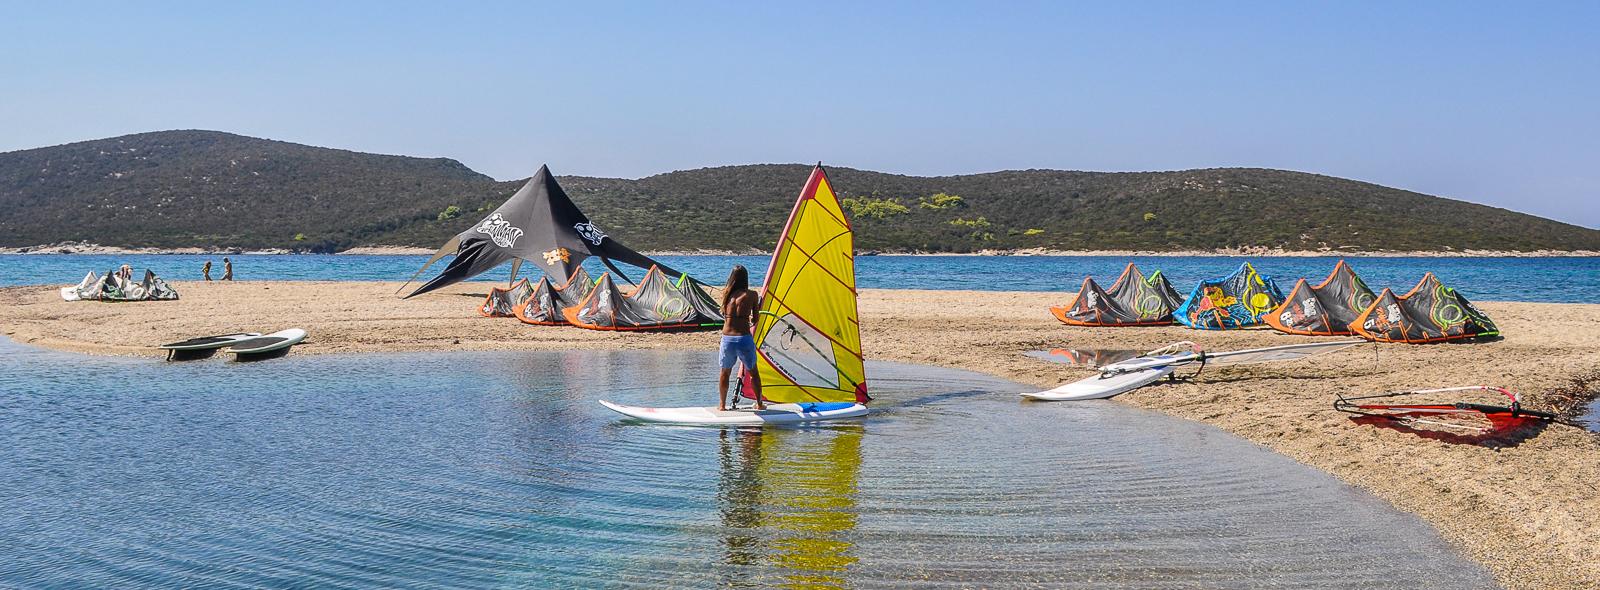 Partes faire du windsurf en Grèce, à Evia sur le spot de Marmari - général - banniere